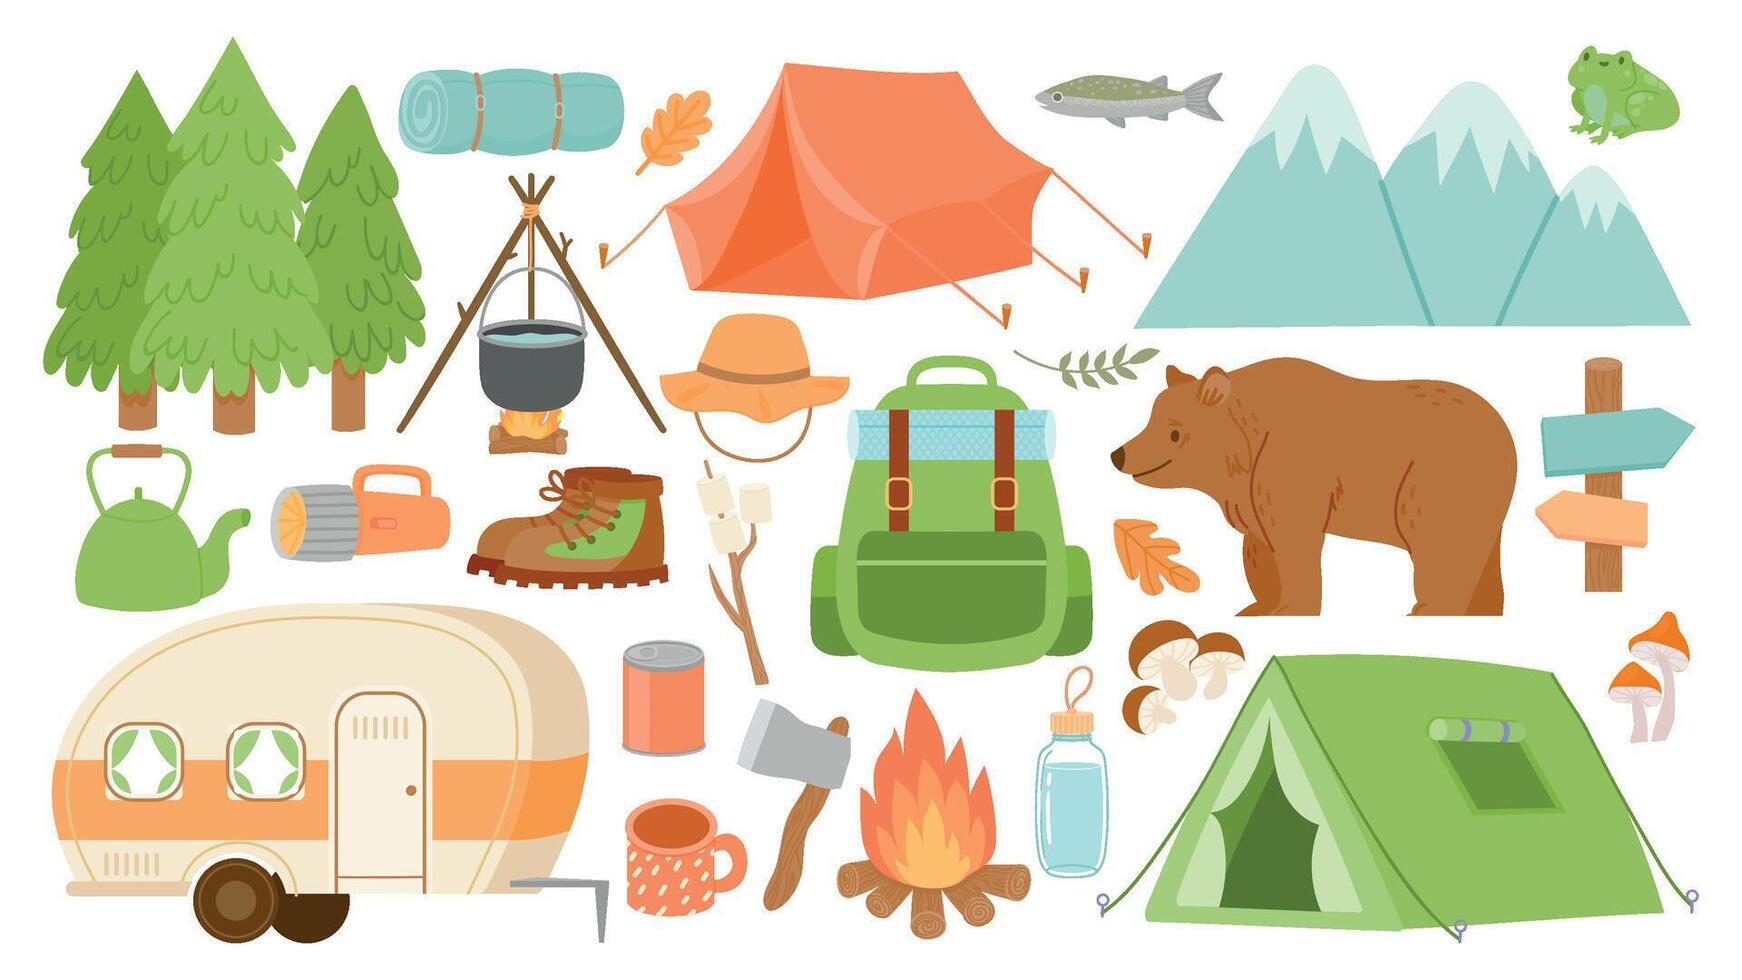 dibujos animados cámping y excursionismo equipo, tienda y bosque naturaleza. acampar fuego, bolsa, la carretera hogar, linterna y estera. supervivencia caminata aventuras vector conjunto